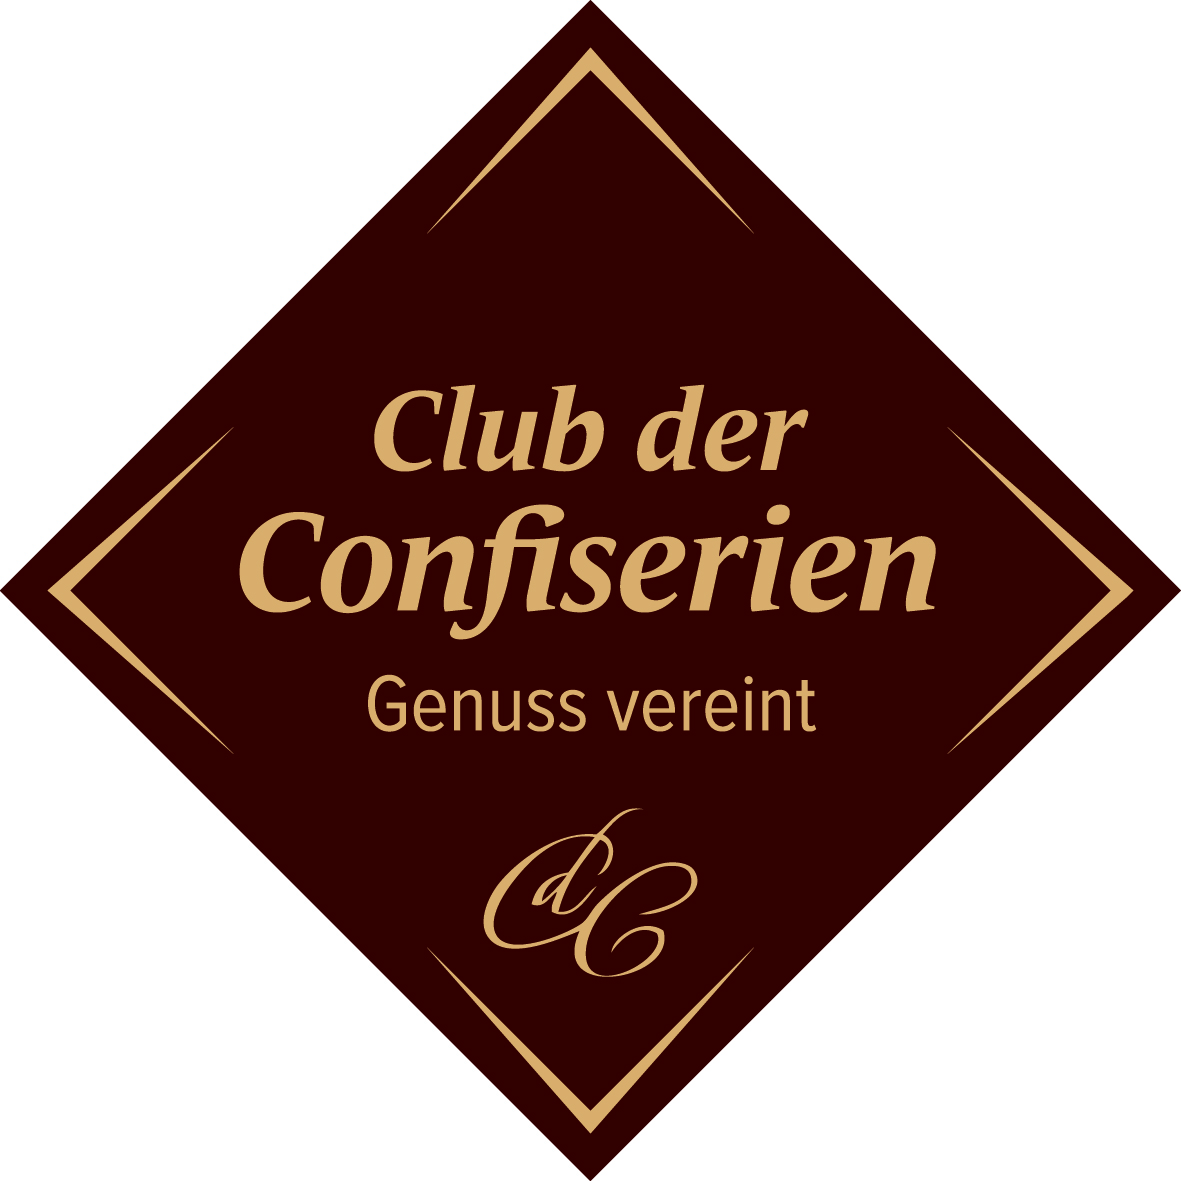 Der Club der Confiserien - gemeinsame Ziele verbinden!